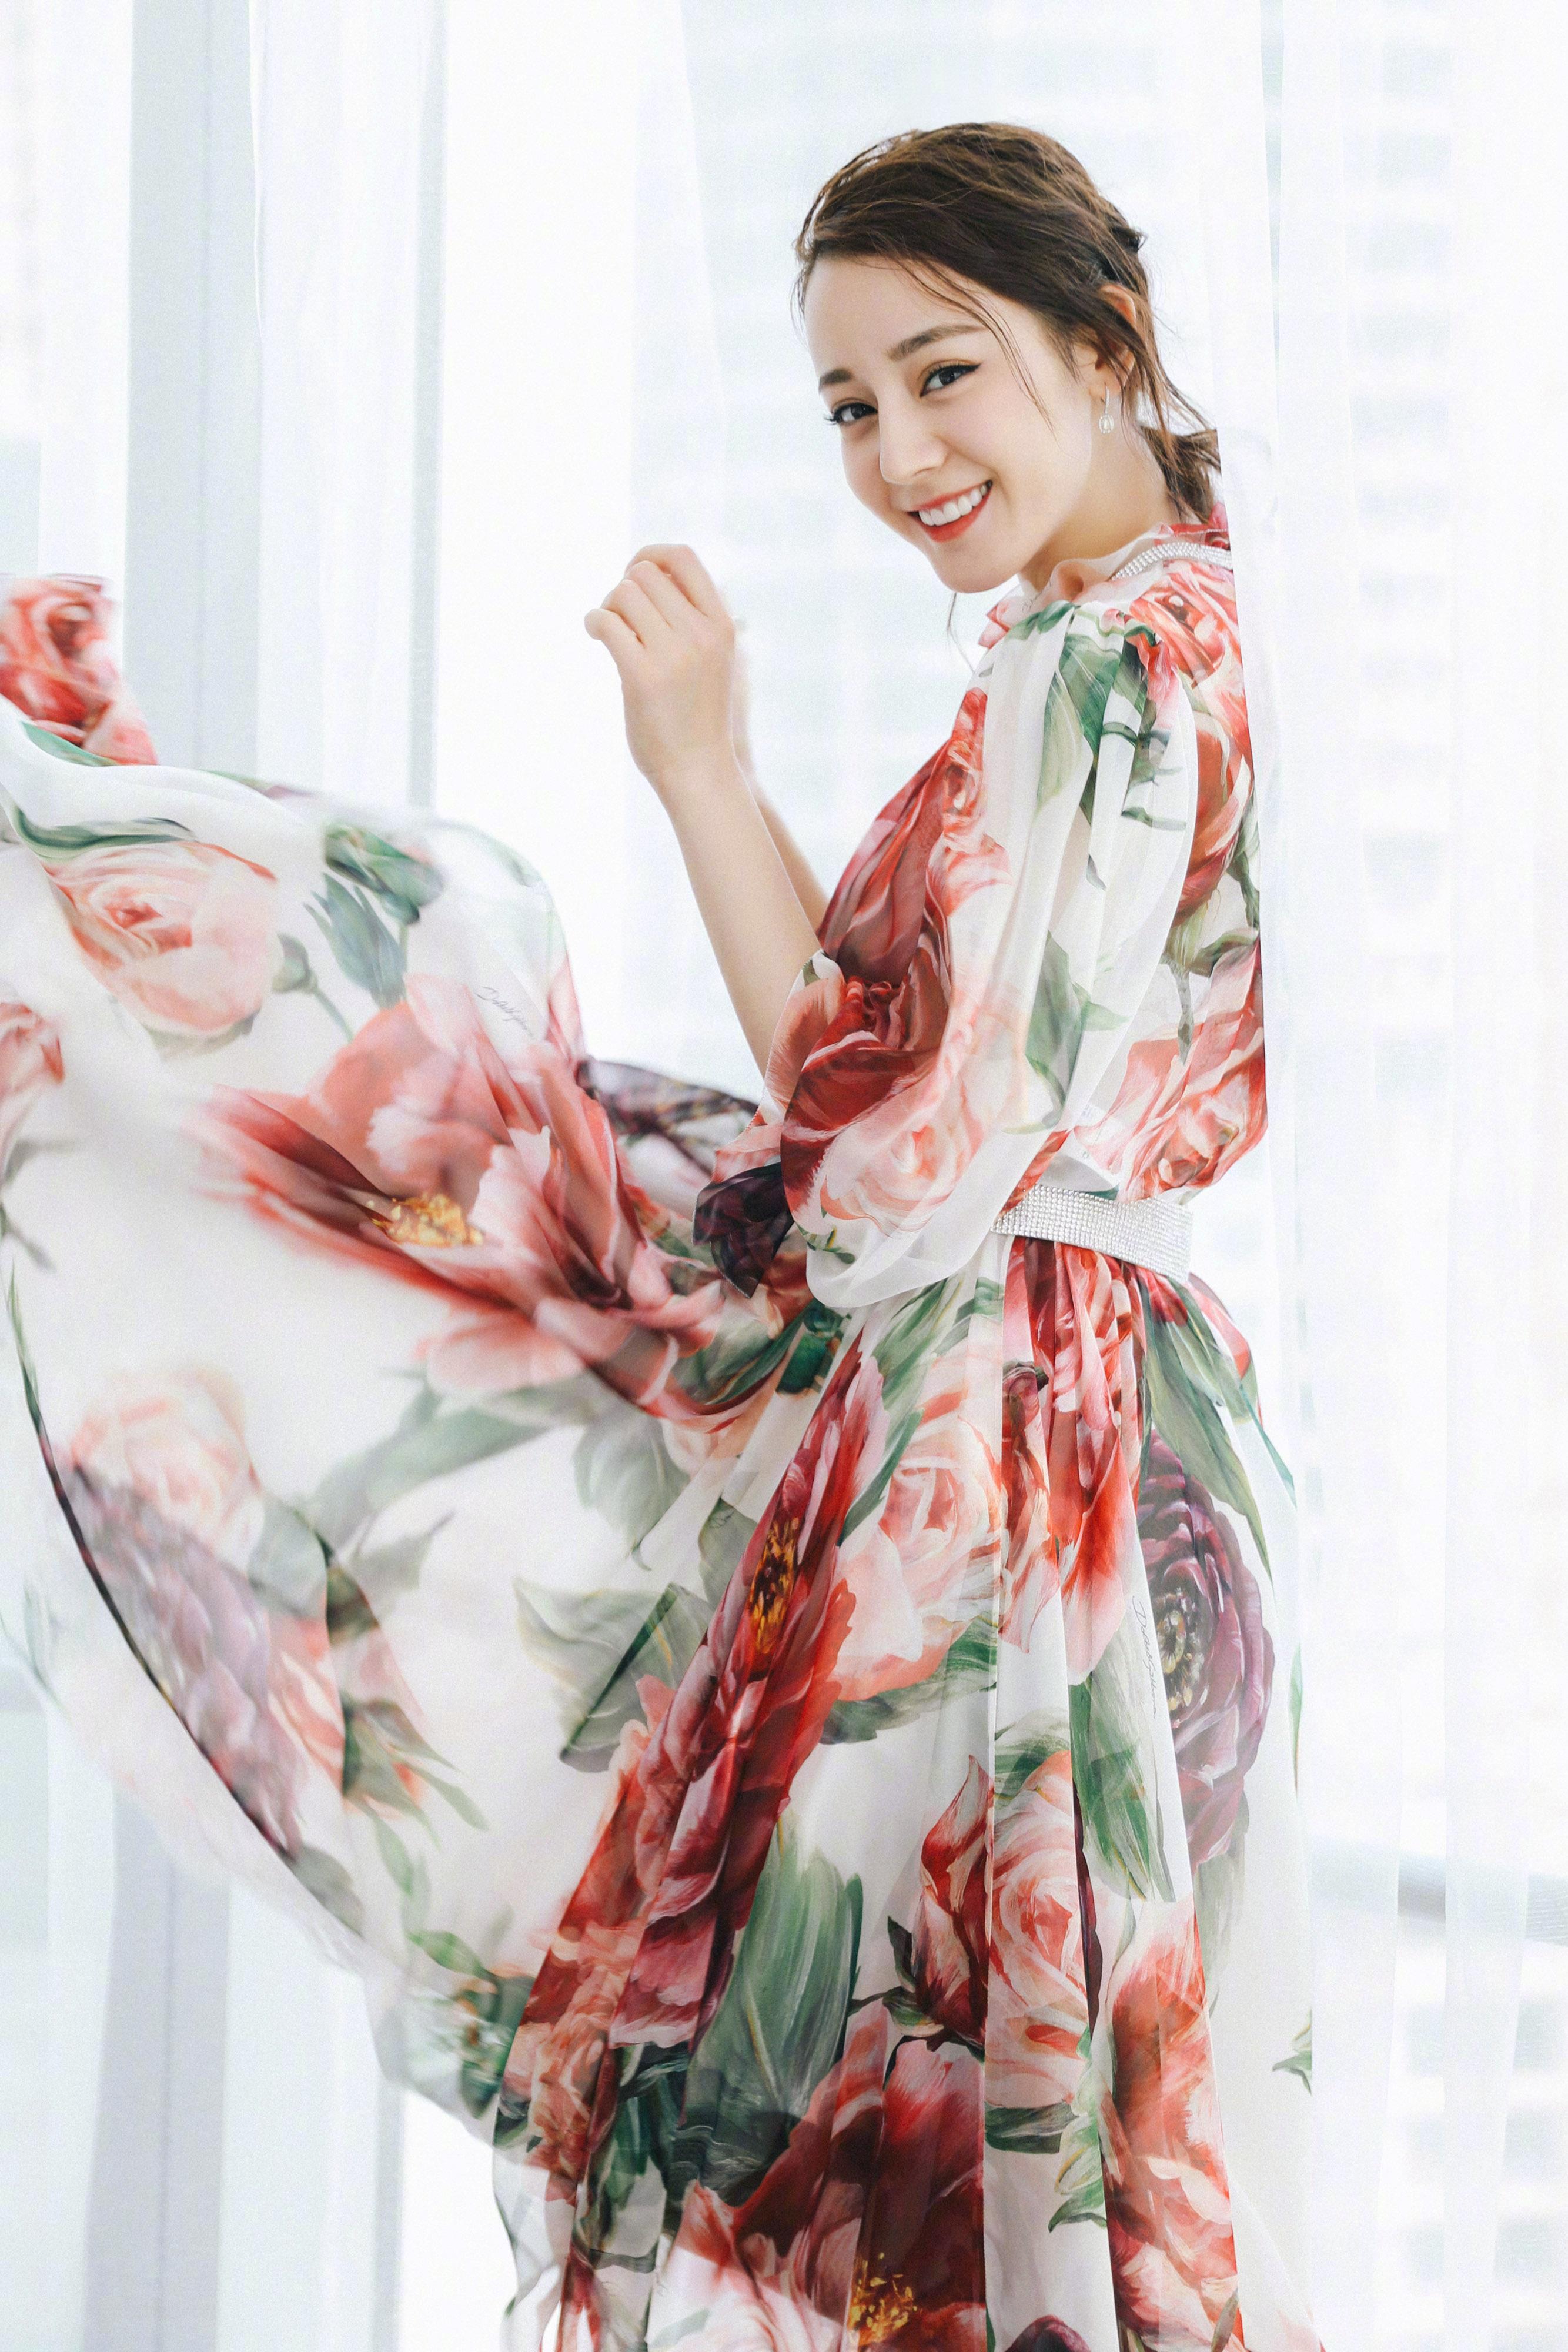 迪丽热巴 出席新电影《21克拉》发布会 依旧穿着Dolce & Gabbana的印花裙,